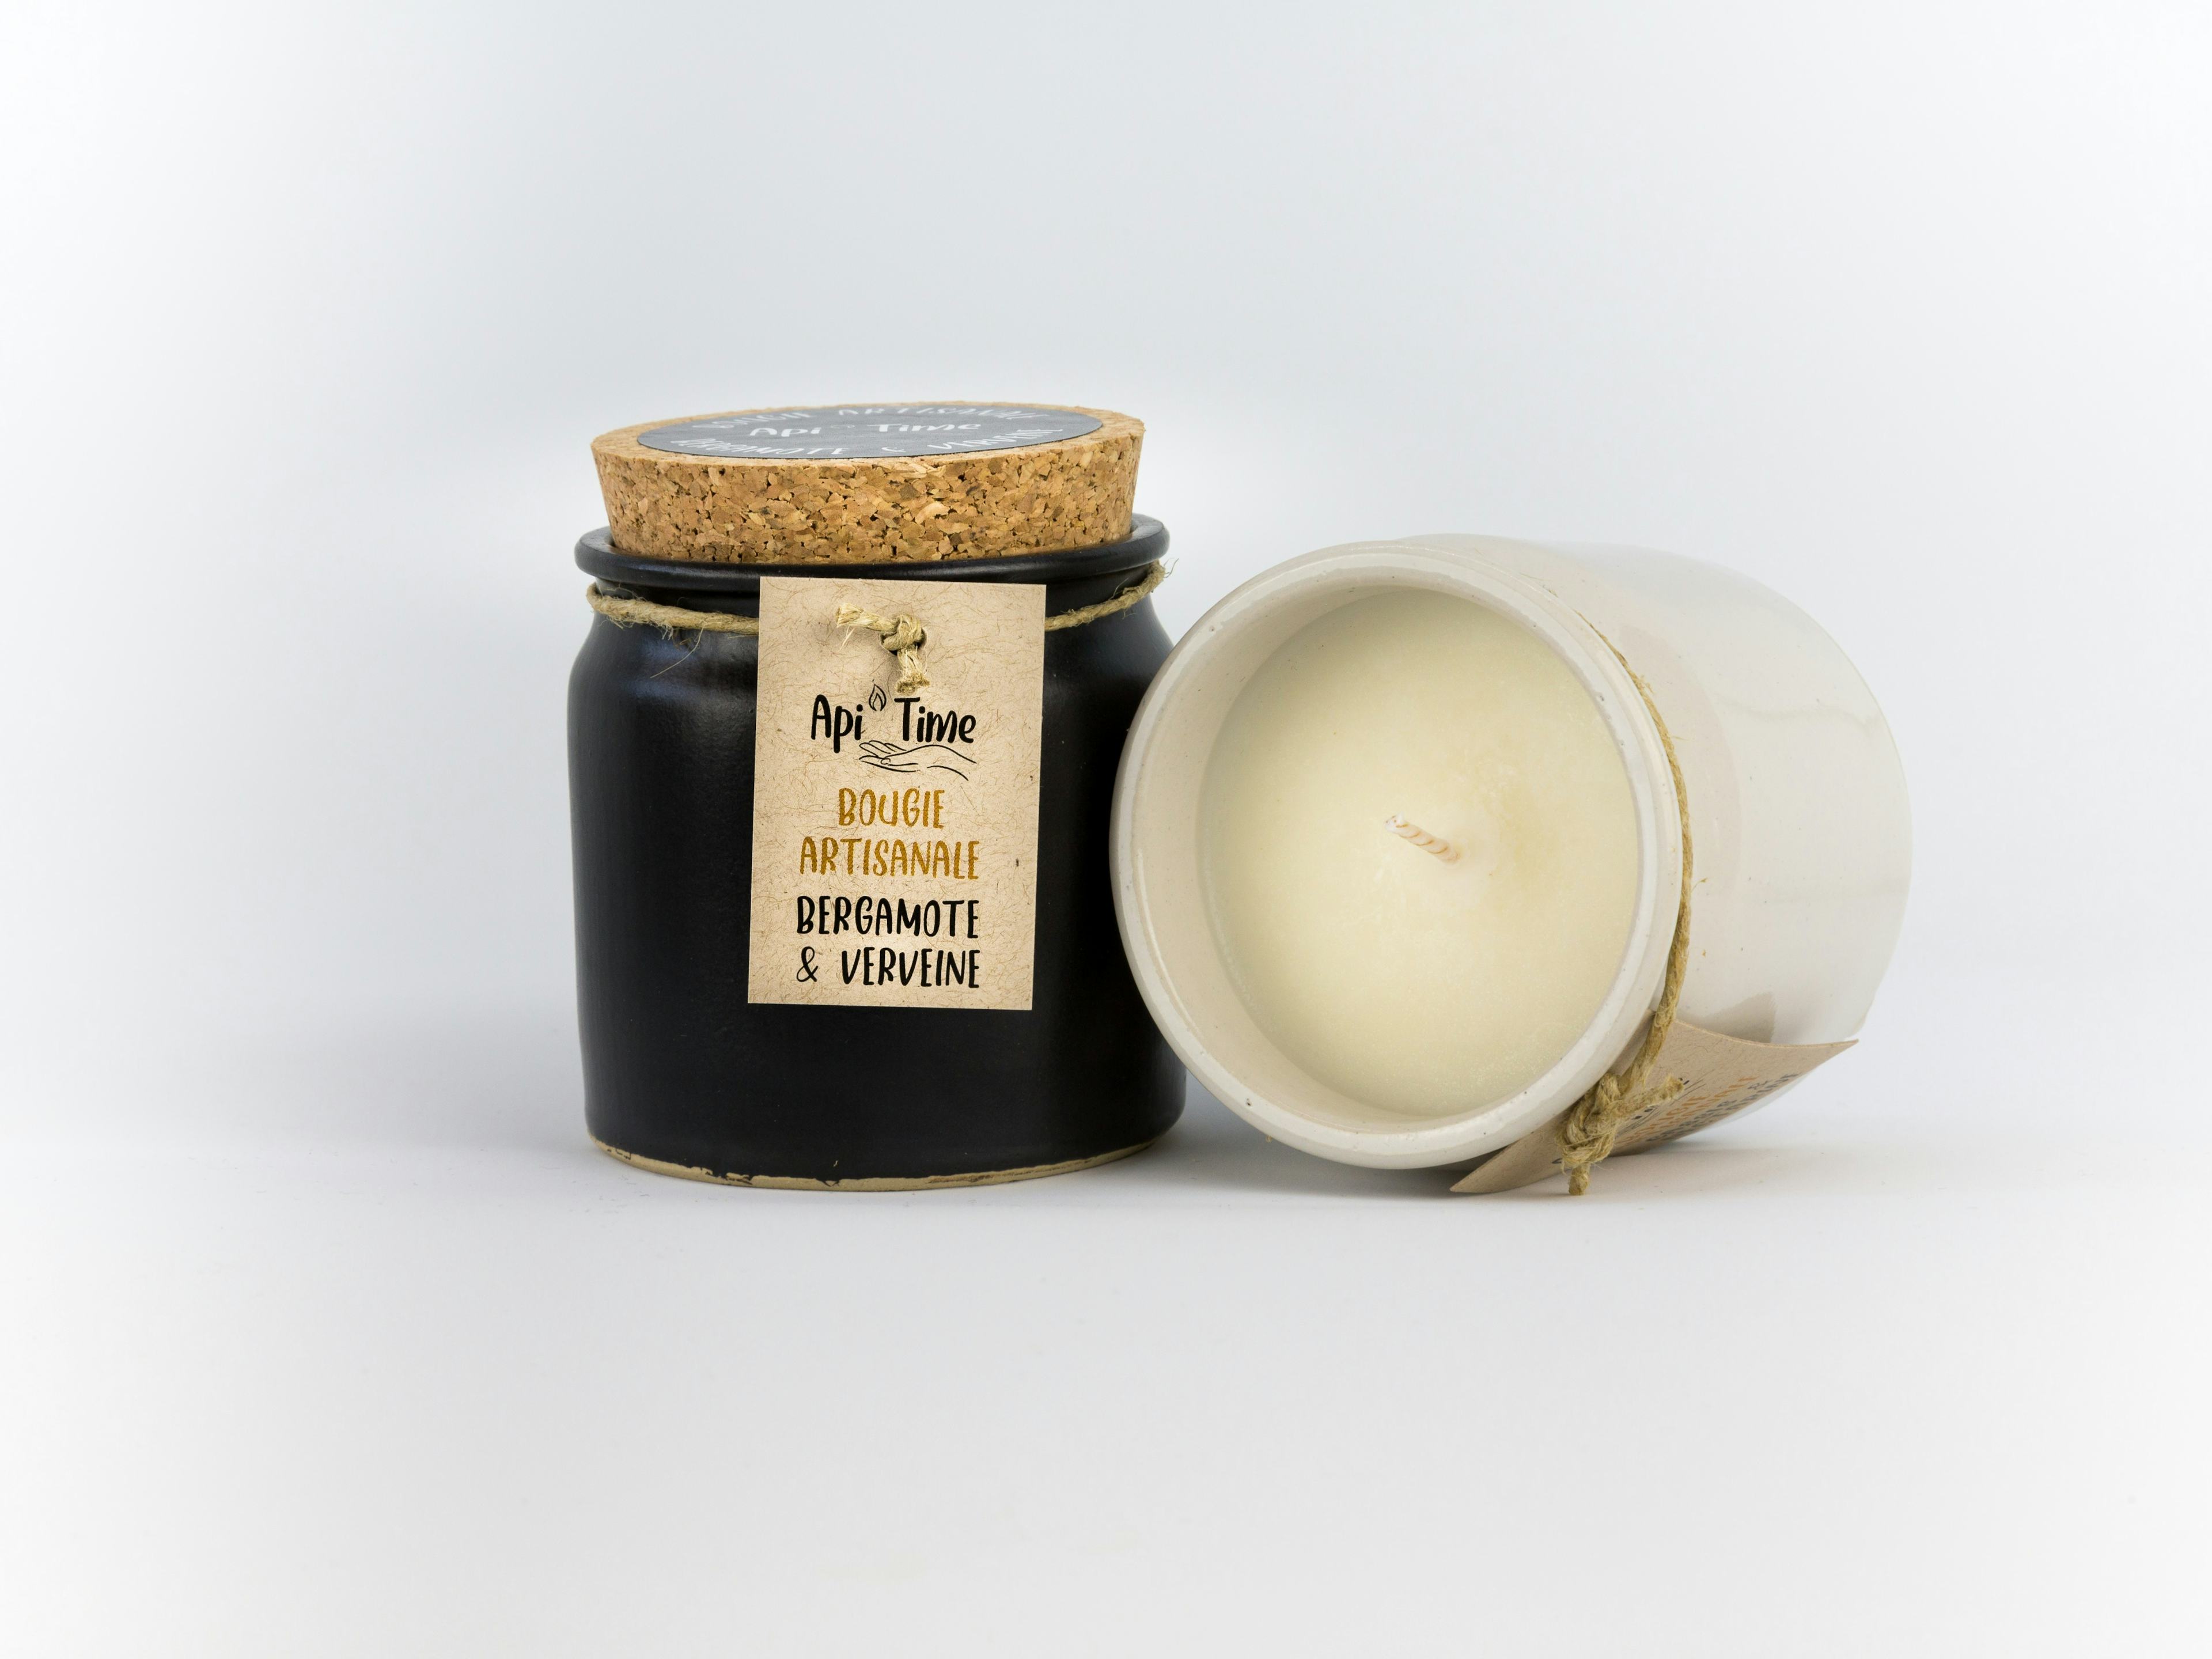 Kerzen im Keramiktopf, Duft nach Bergamotte und Eisenkraut, Le Goût du Miel, Courtepin, image 1 | Mimelis